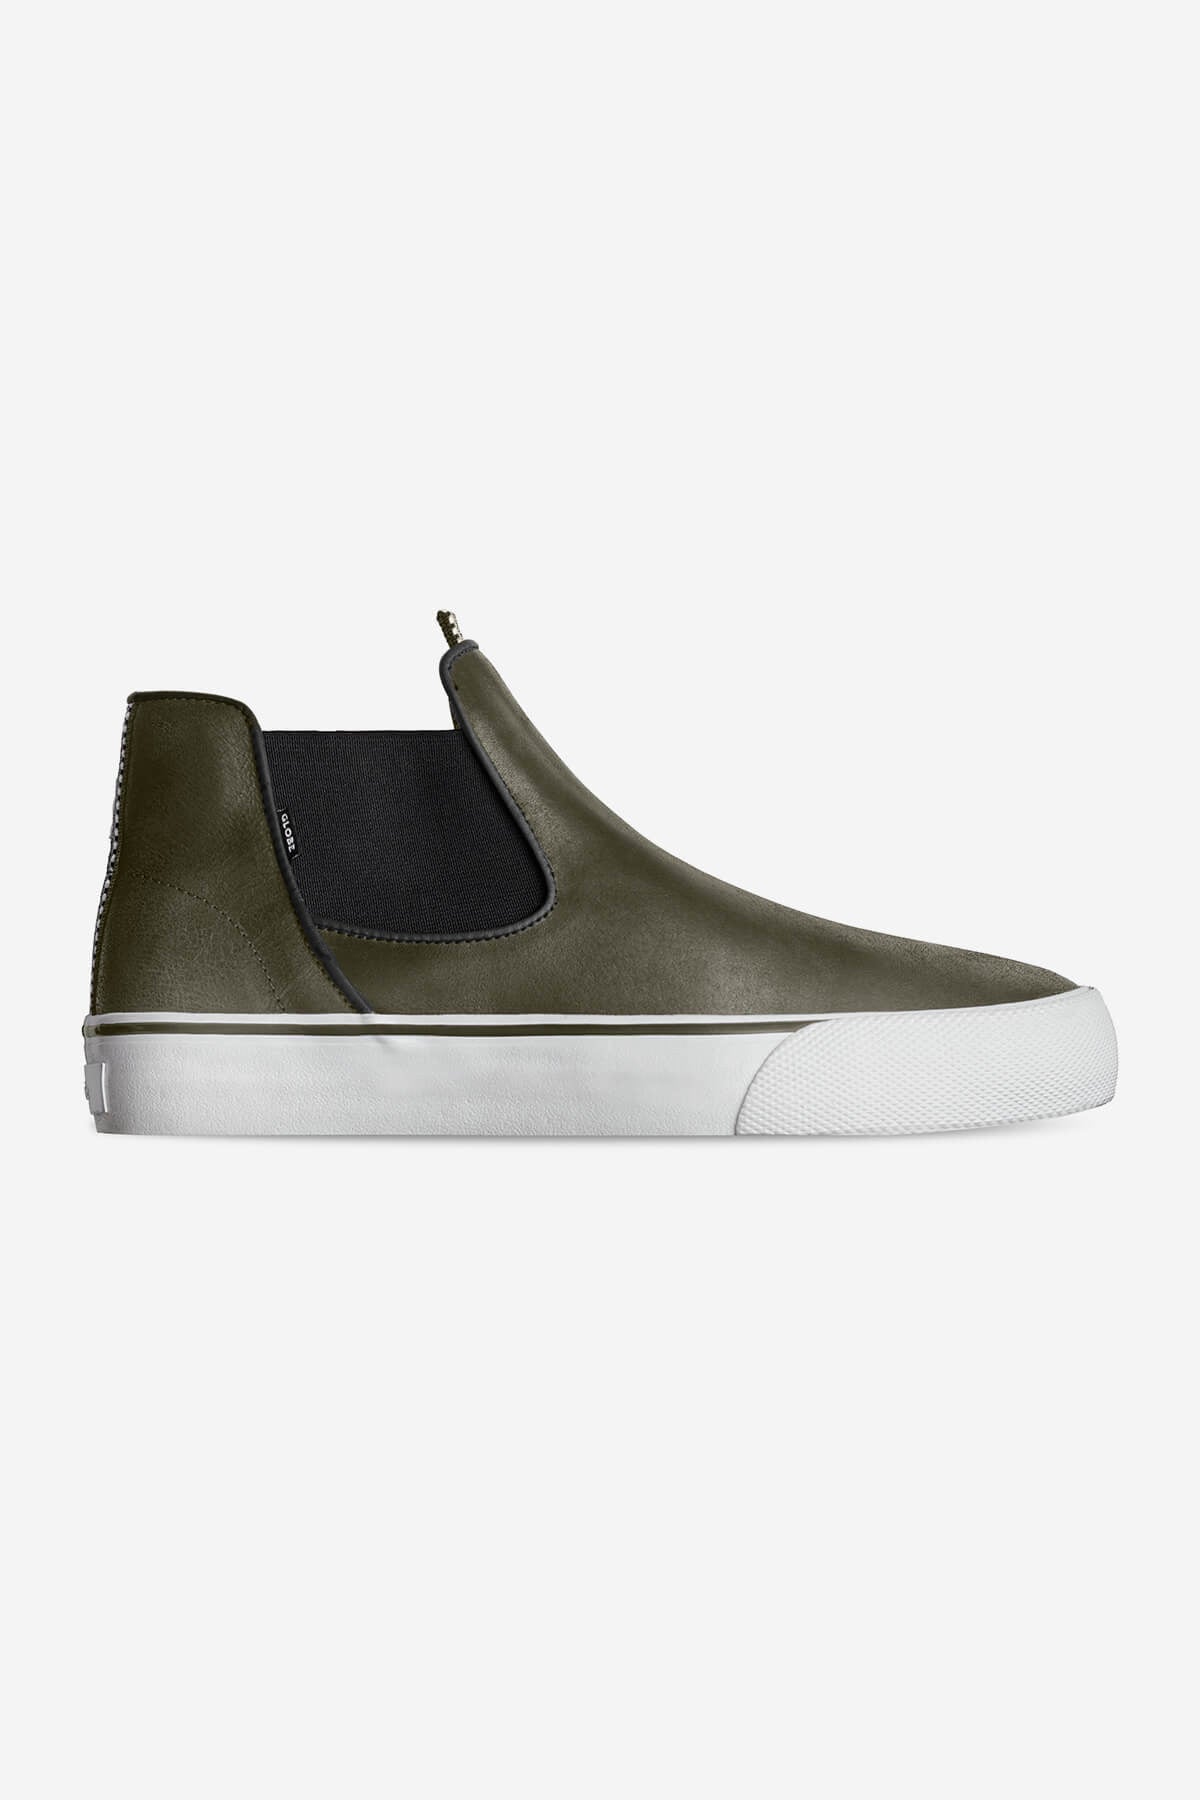 Globe - Dover - Olive/Gillette - skateboard Zapatos